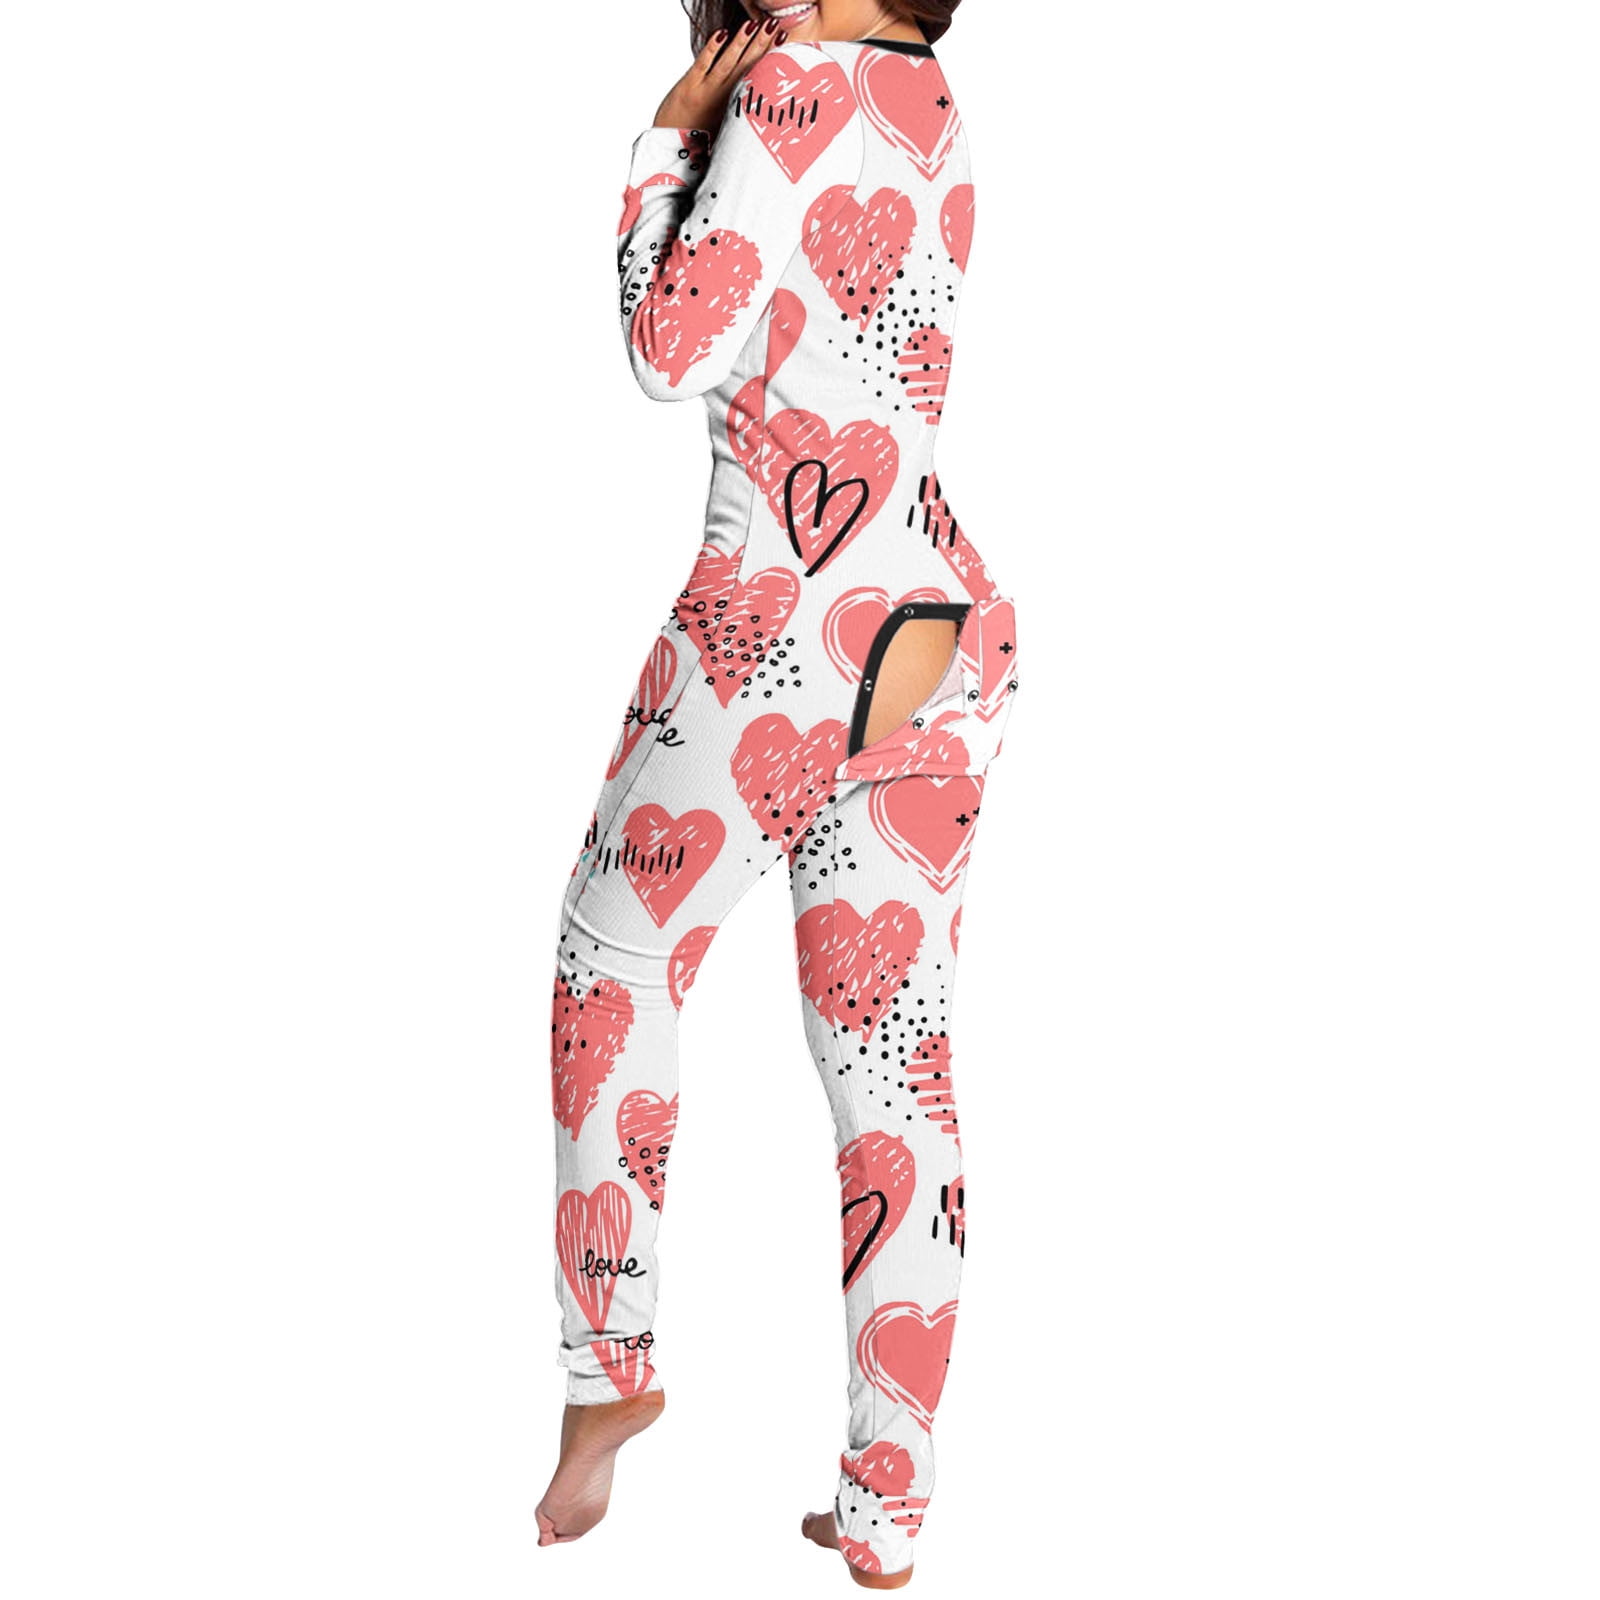 Shiusina Pajamas For Women Women's Button-Down Print Functional ...